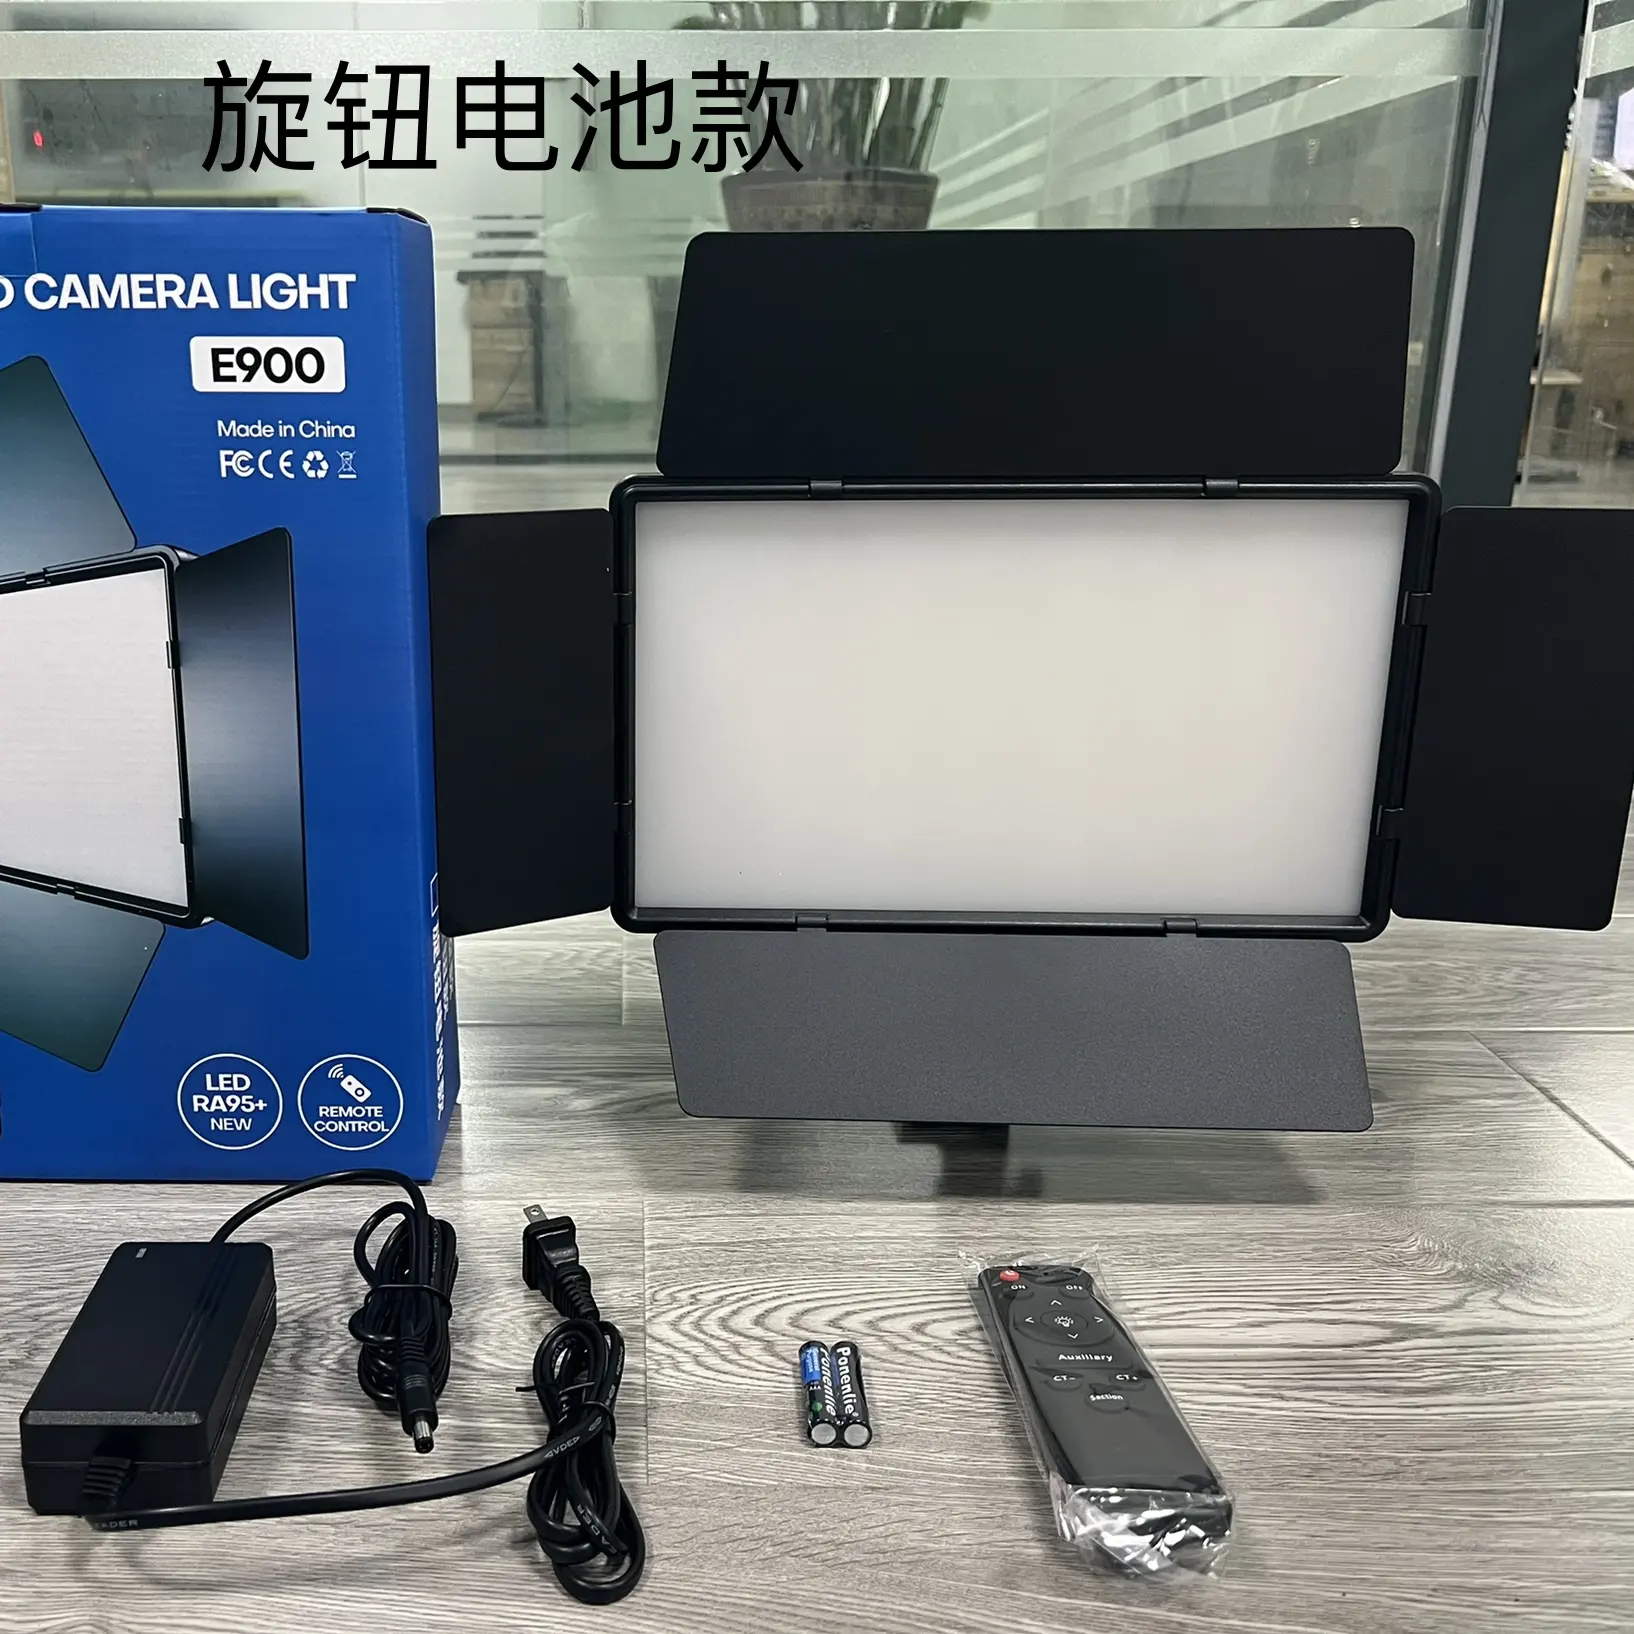 Gran oferta de fábrica, nuevo Kit de grabadora de vídeo E900 de 55W, anillo LED, película, vídeo, fotografía, lámpara fluorescente, vídeo musical, luz LED blanca